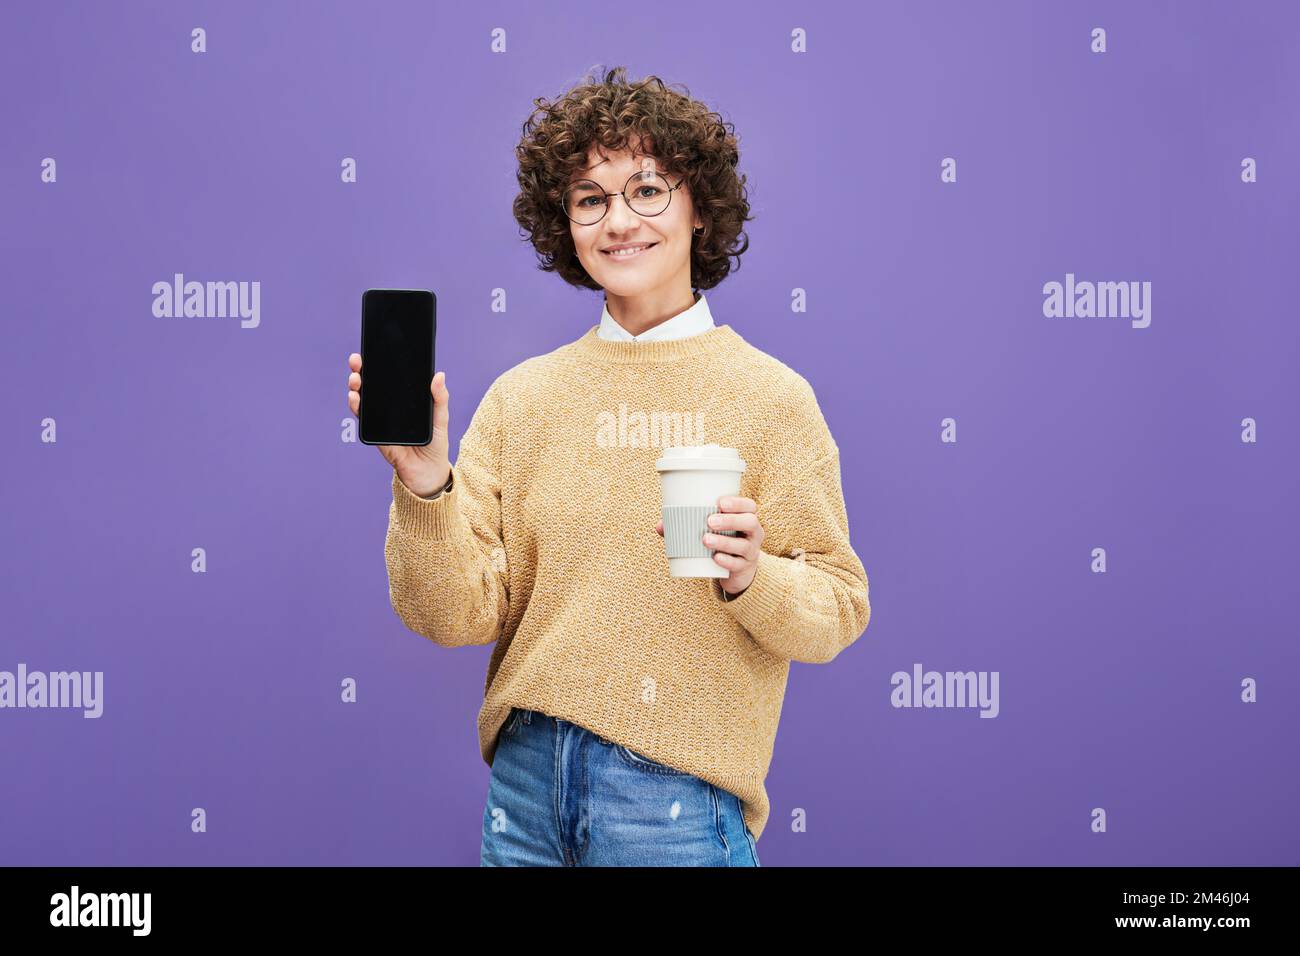 Mujer morena joven feliz con la taza de café que muestra el smartphone con la pantalla en blanco donde usted puede poner el texto del anuncio Foto de stock